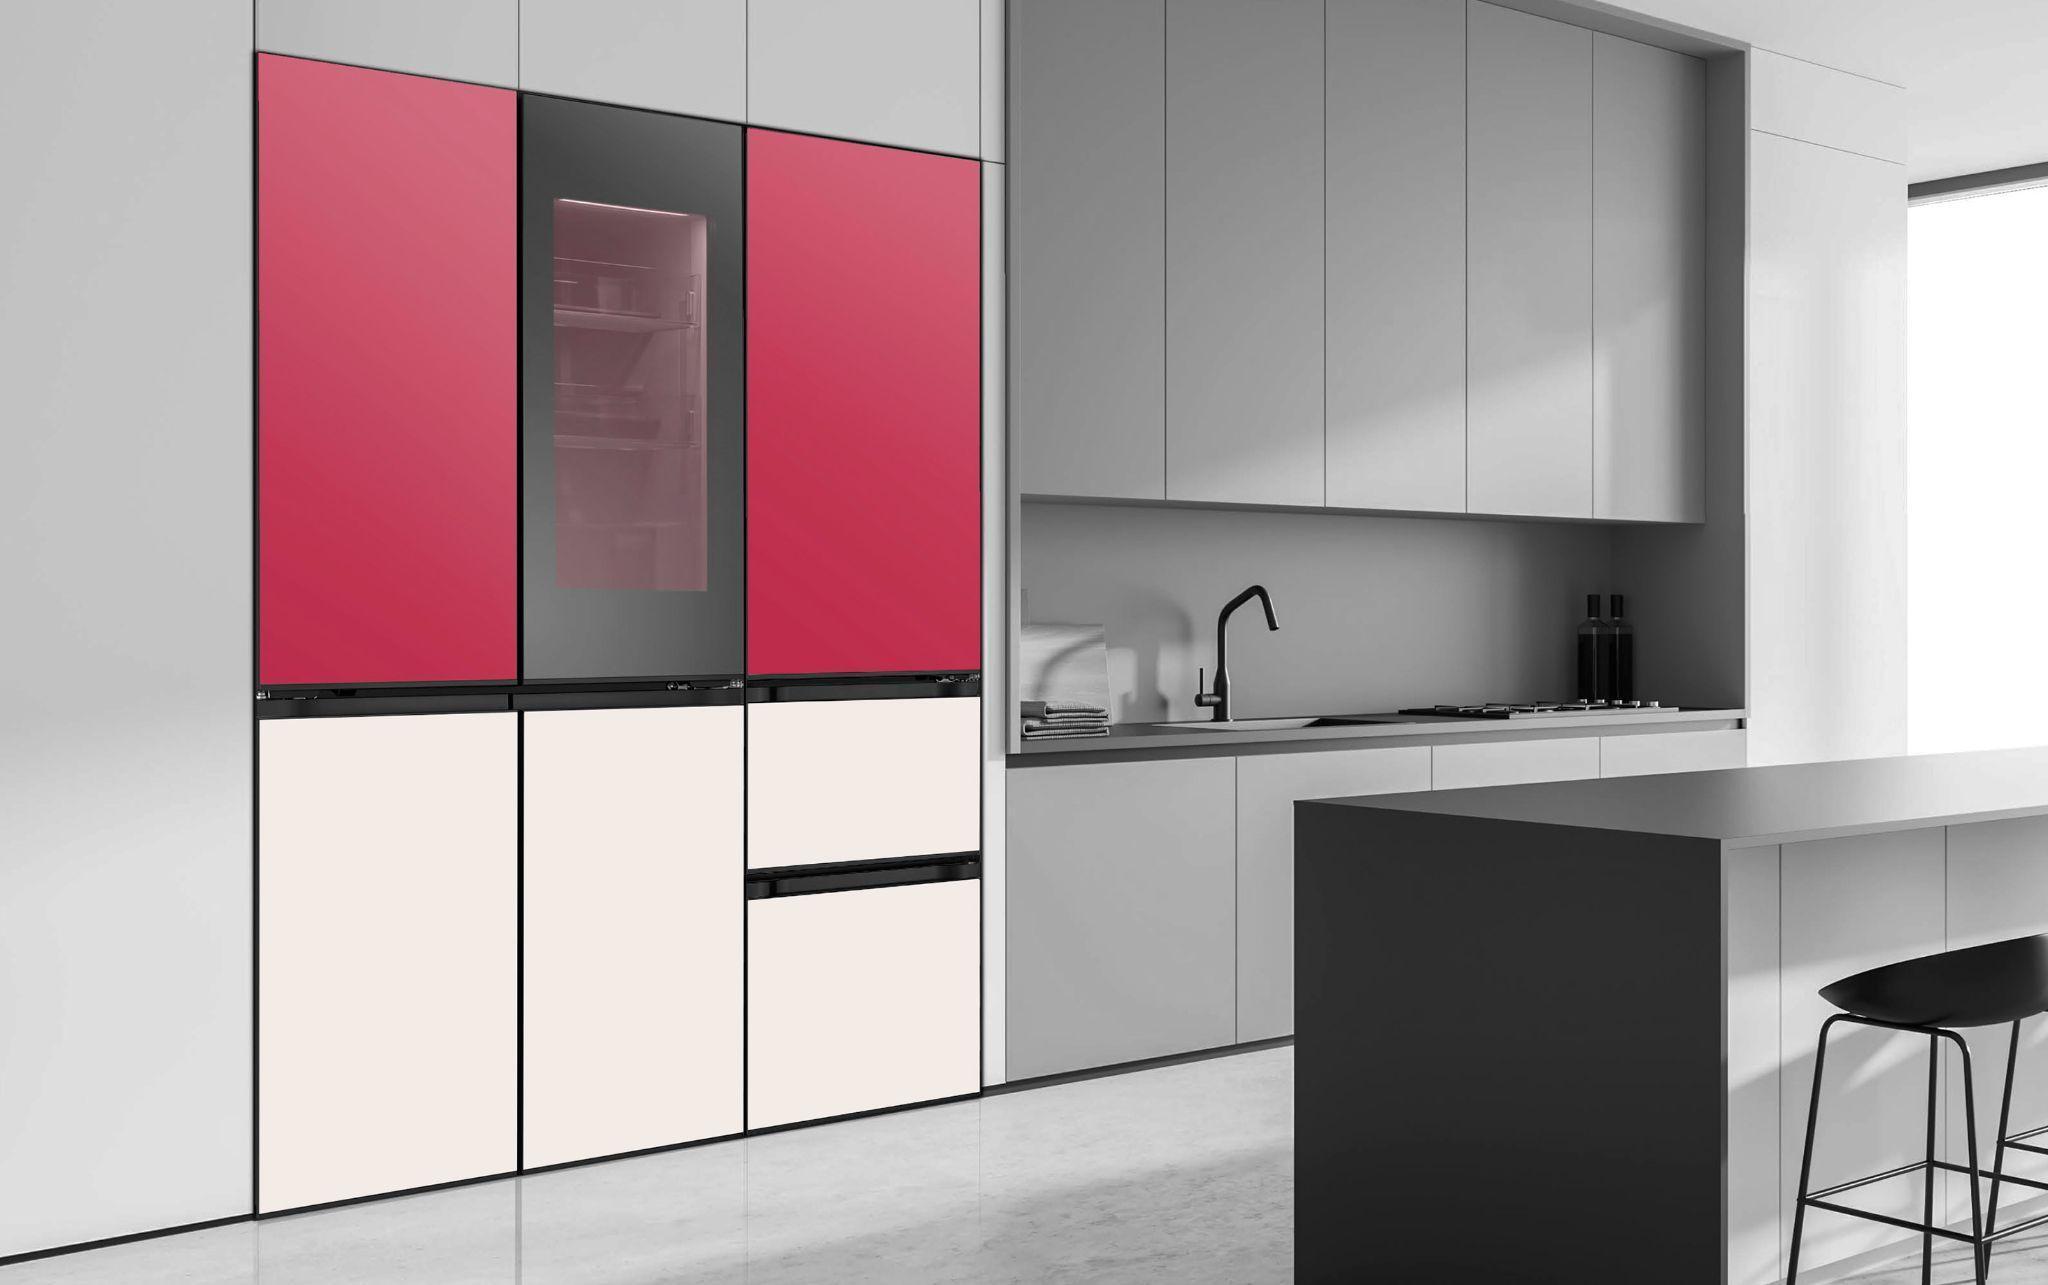 Bắt kịp xu hướng màu sắc của năm 2023, LG cho ra mắt tủ lạnh MoodUP™ truyền cảm hứng, tạo điểm nhấn sáng tạo độc đáo cho căn bếp.